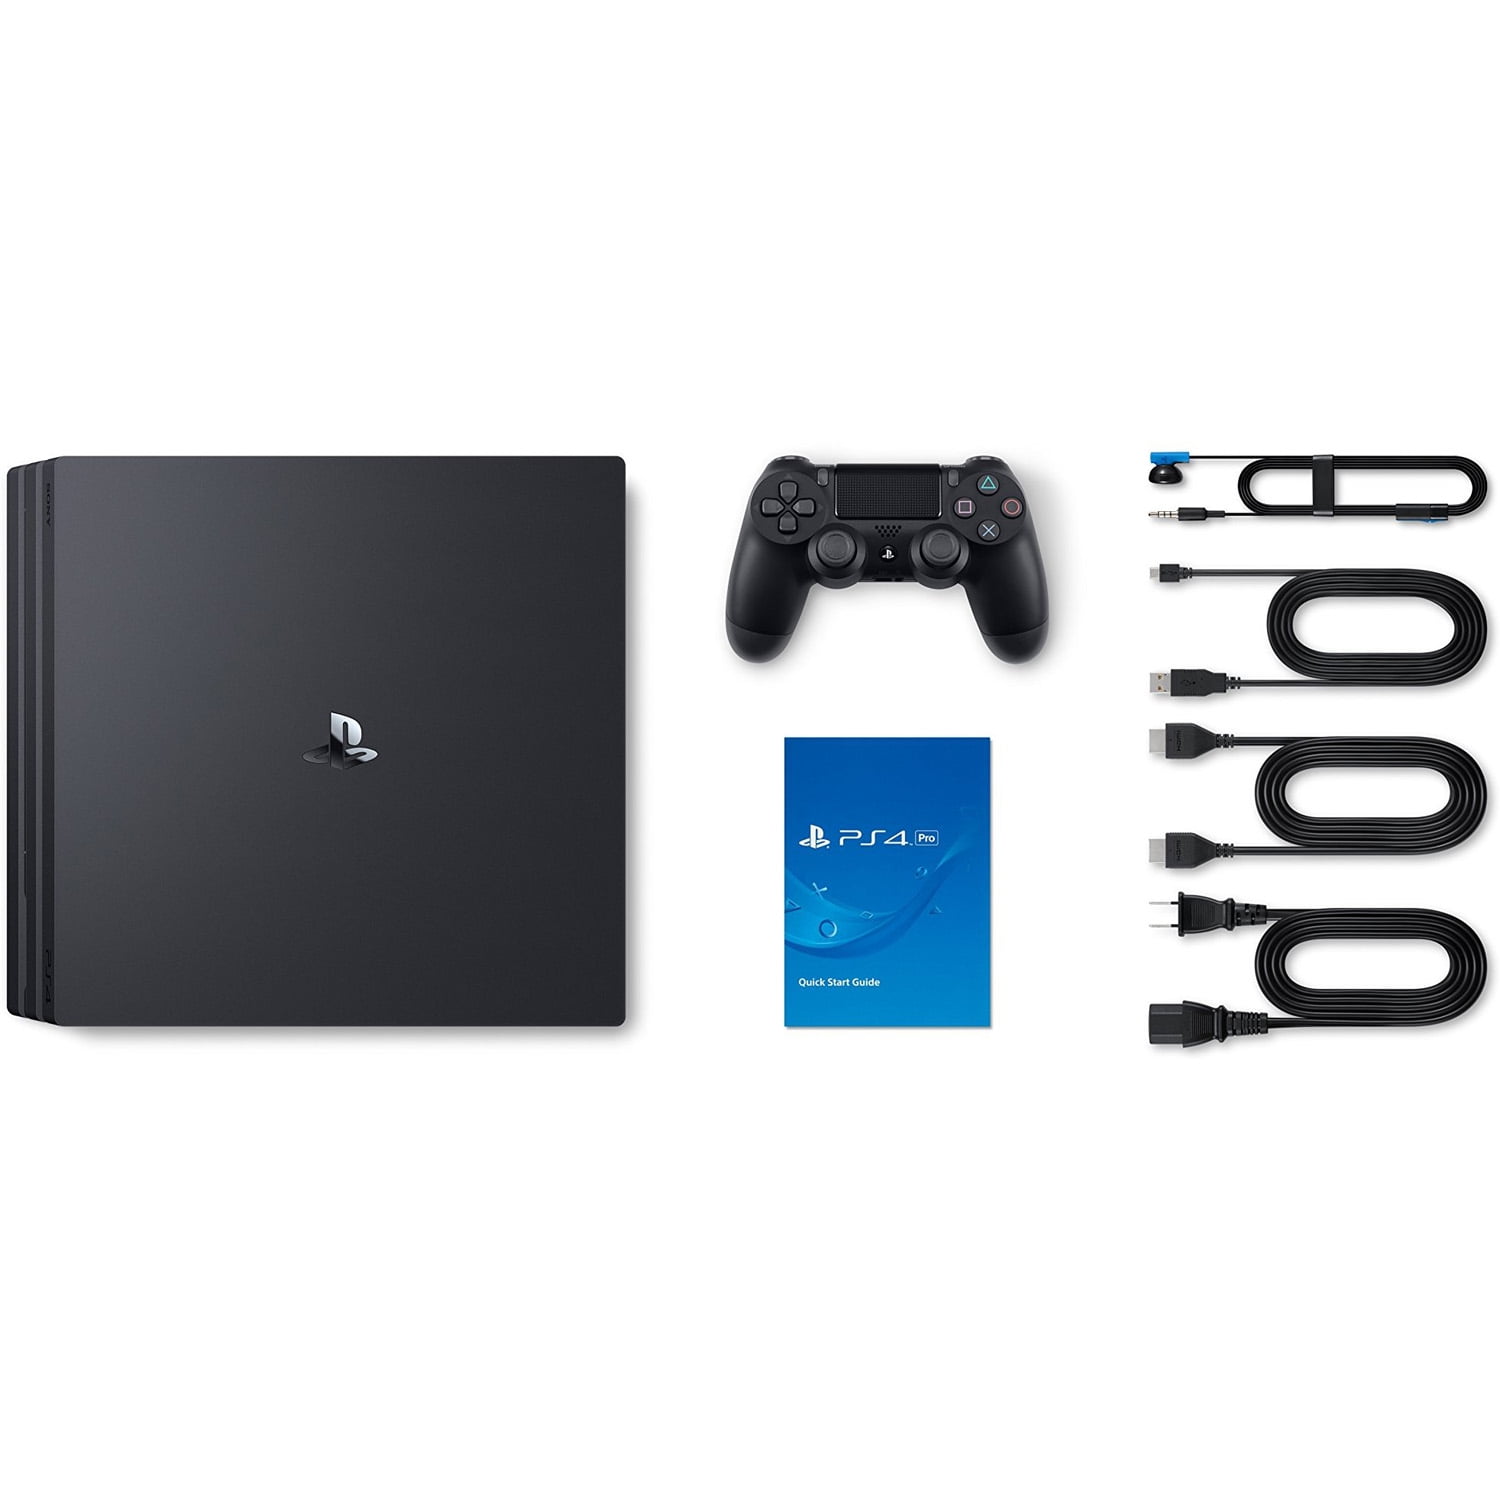 Sony Playstation 4 Pro Walmart on Sale, 50% OFF | www 